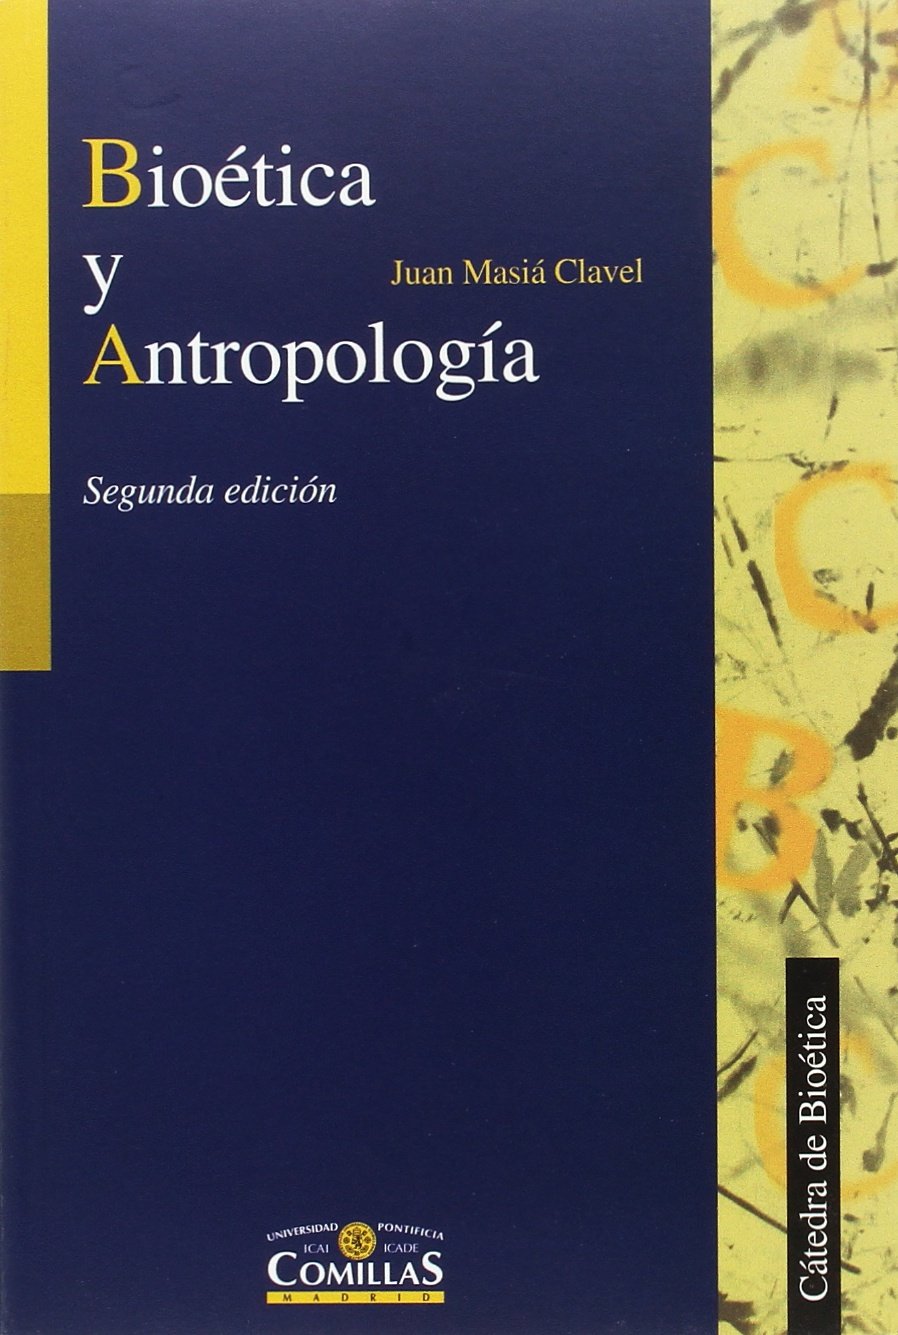 Bioética y Antropología